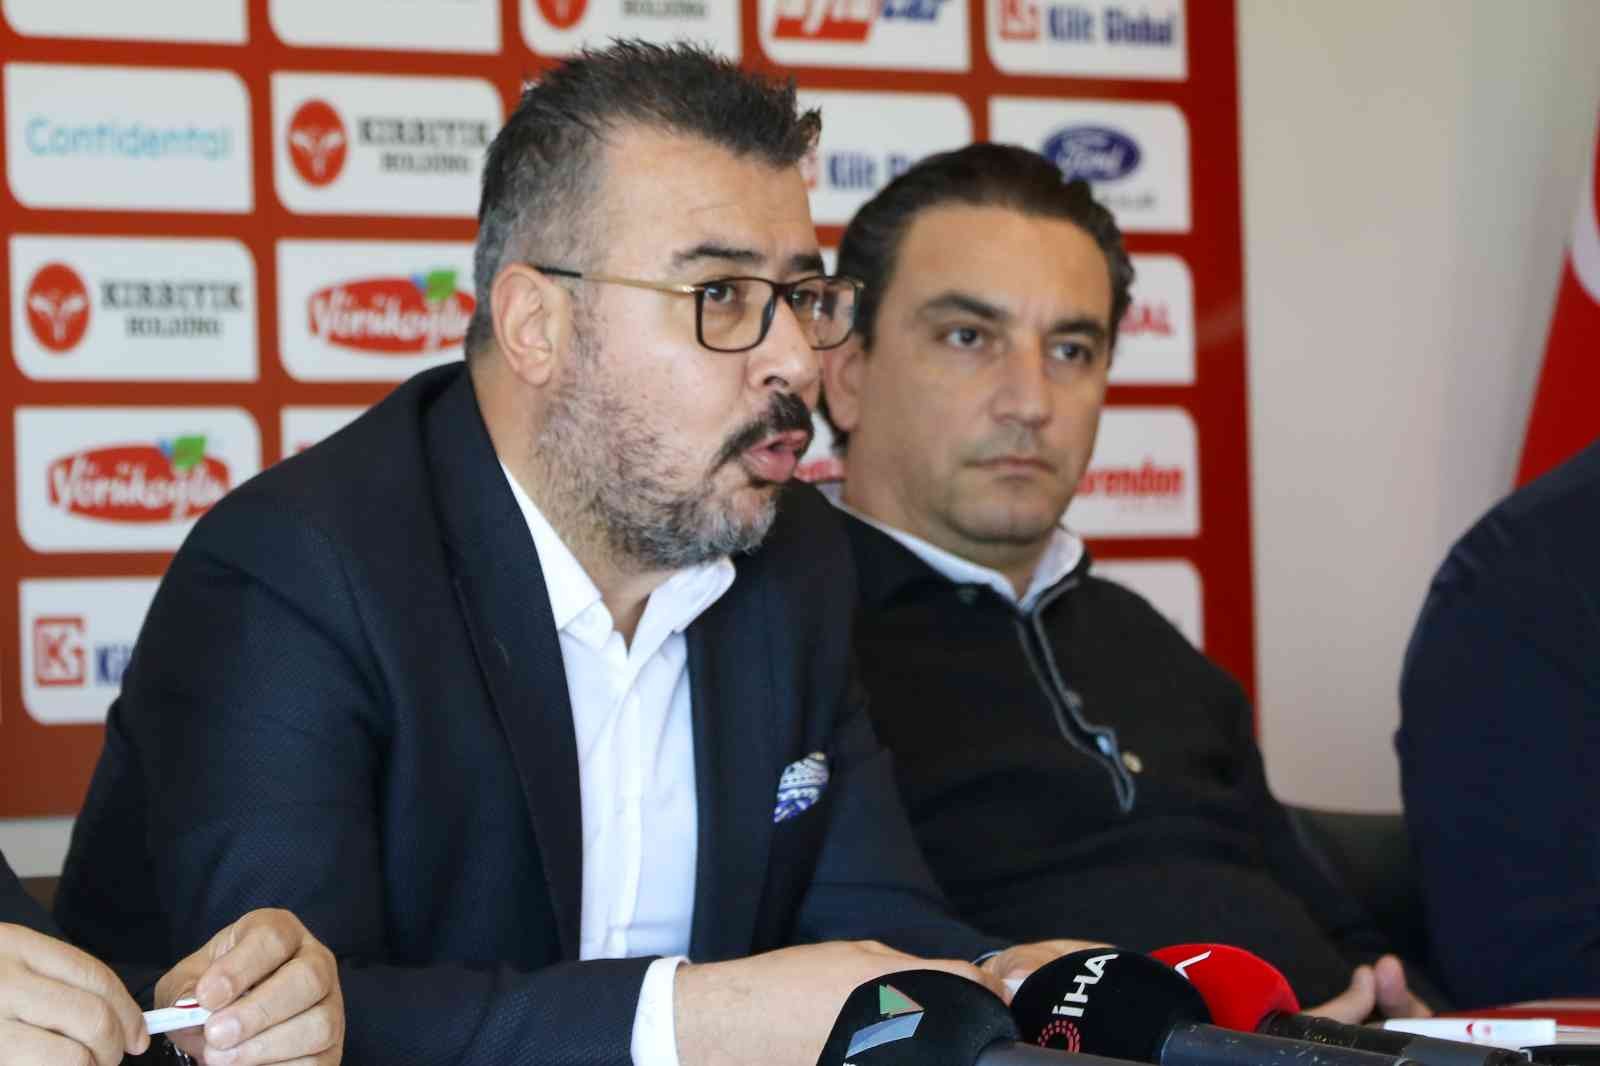 Antalyaspor, yeni transferleri için imza töreni düzenledi #antalya